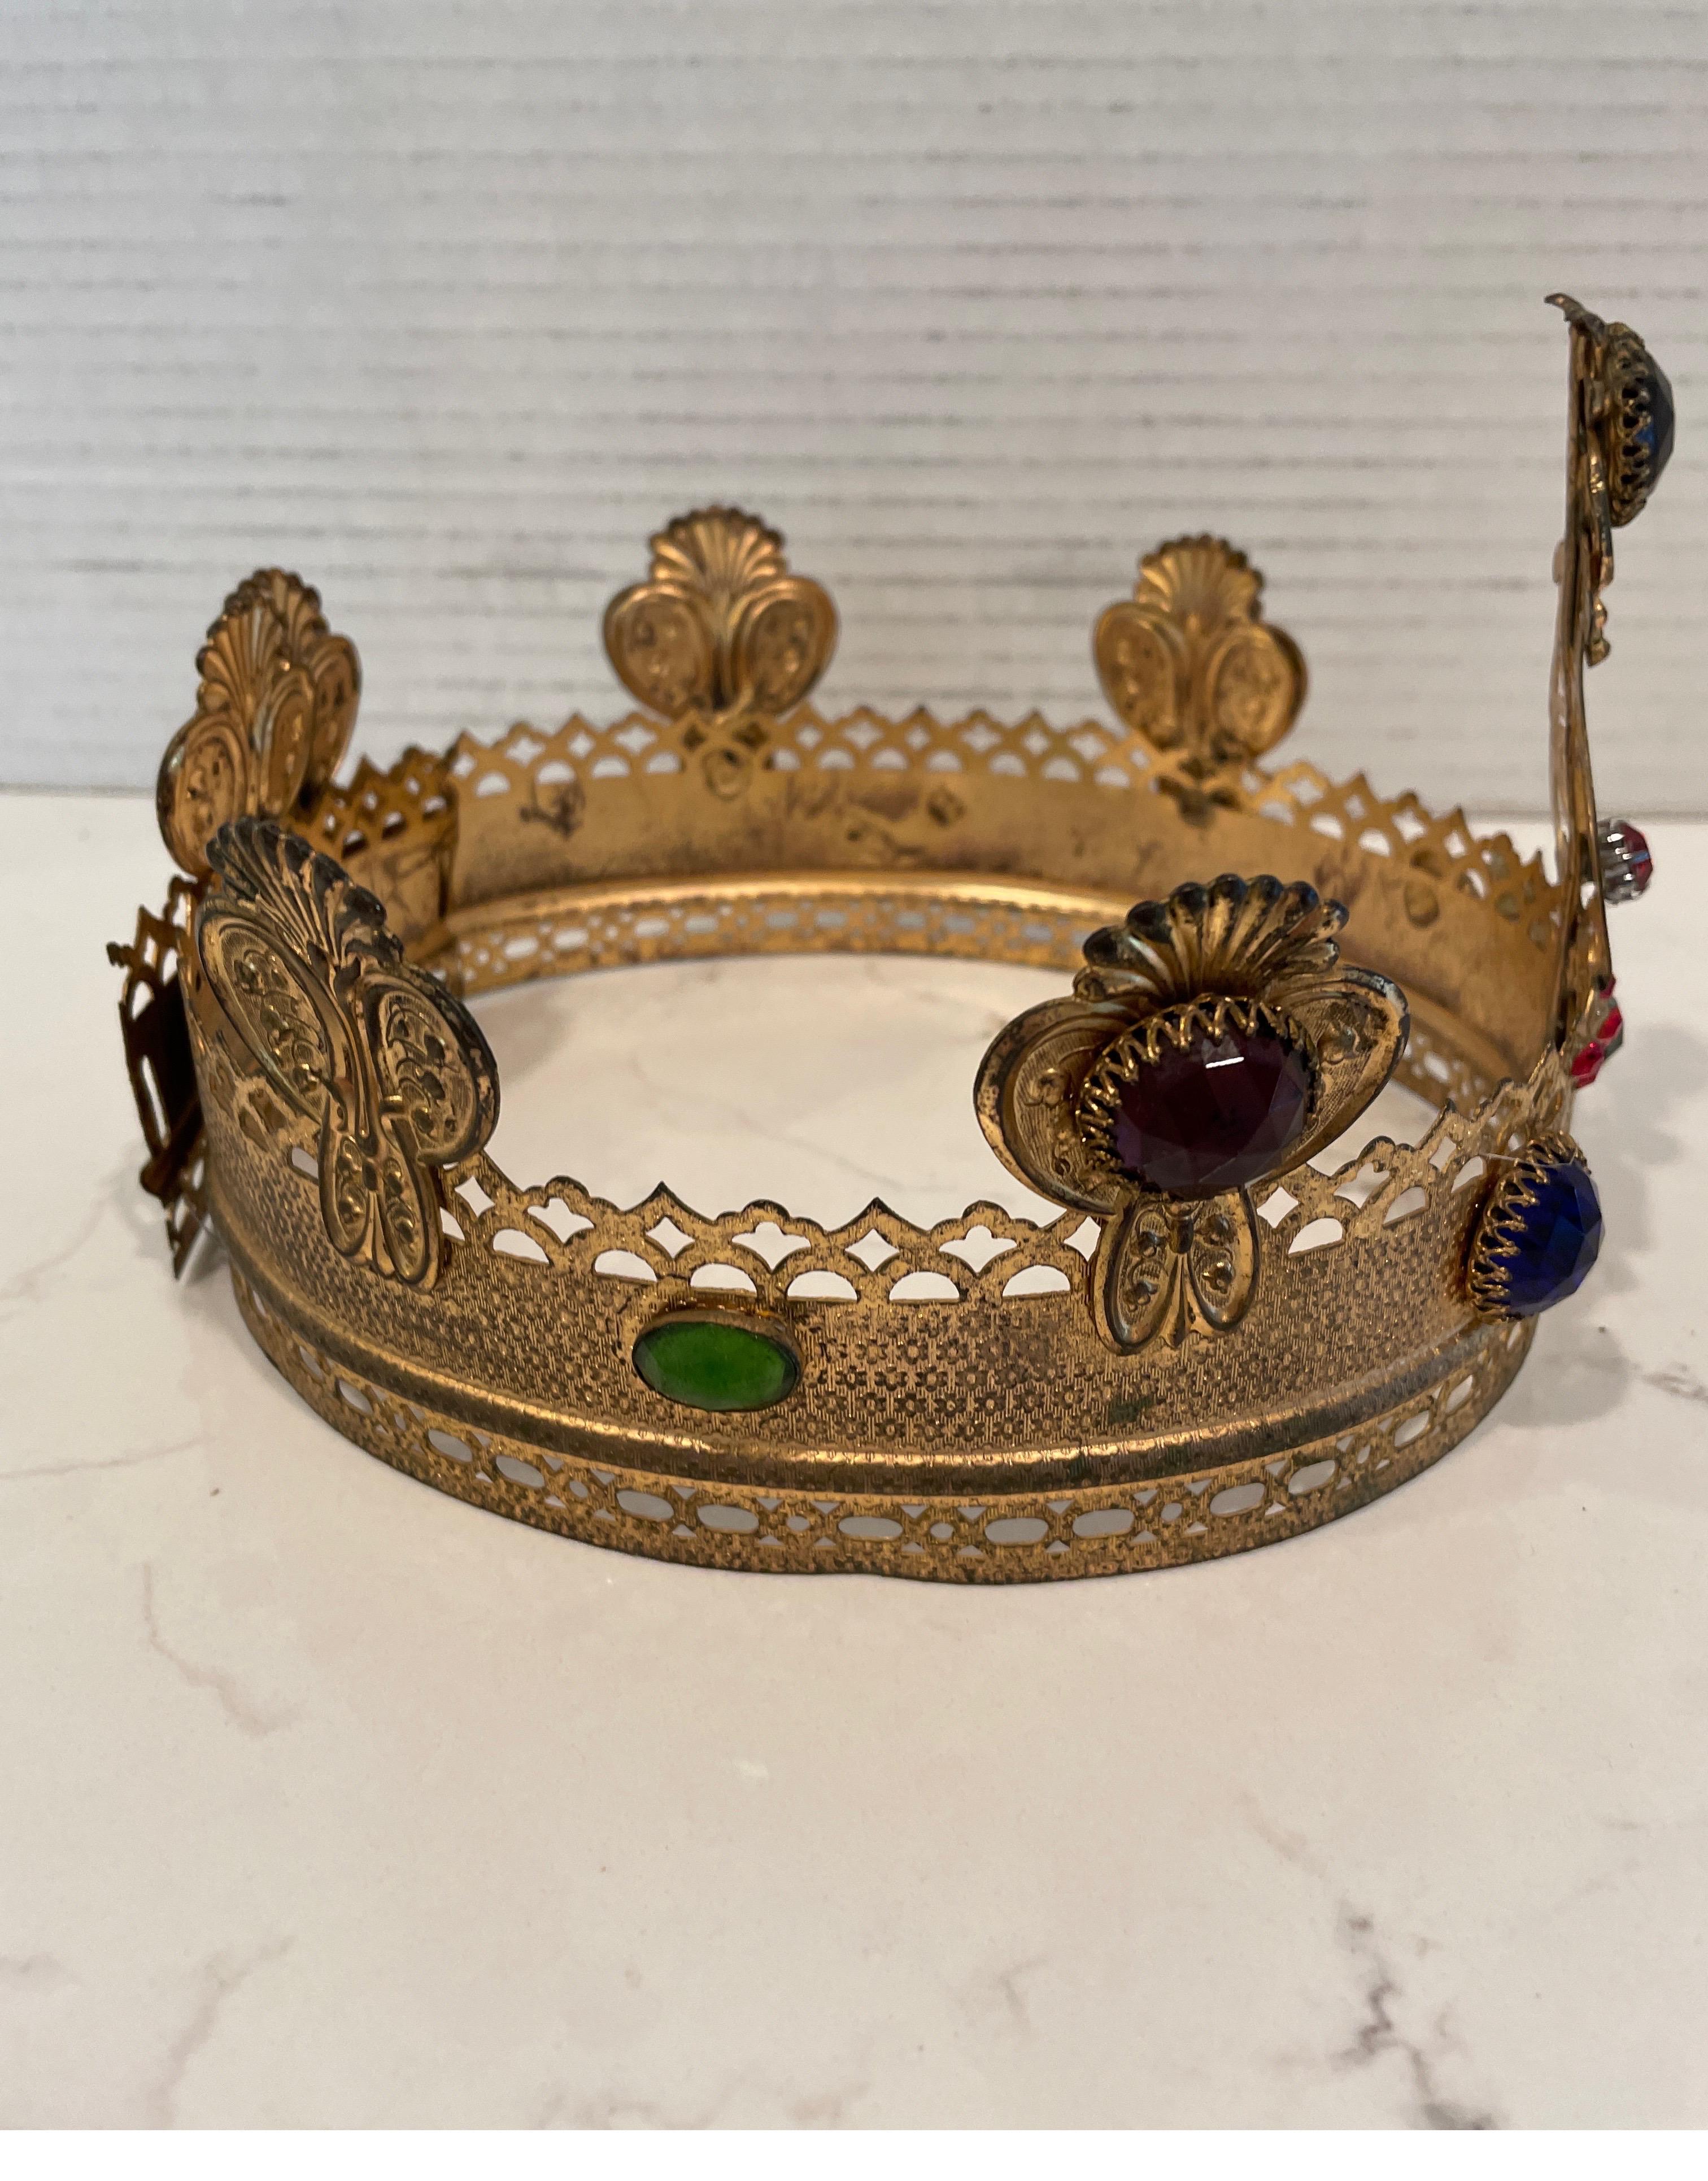 audrey's crown